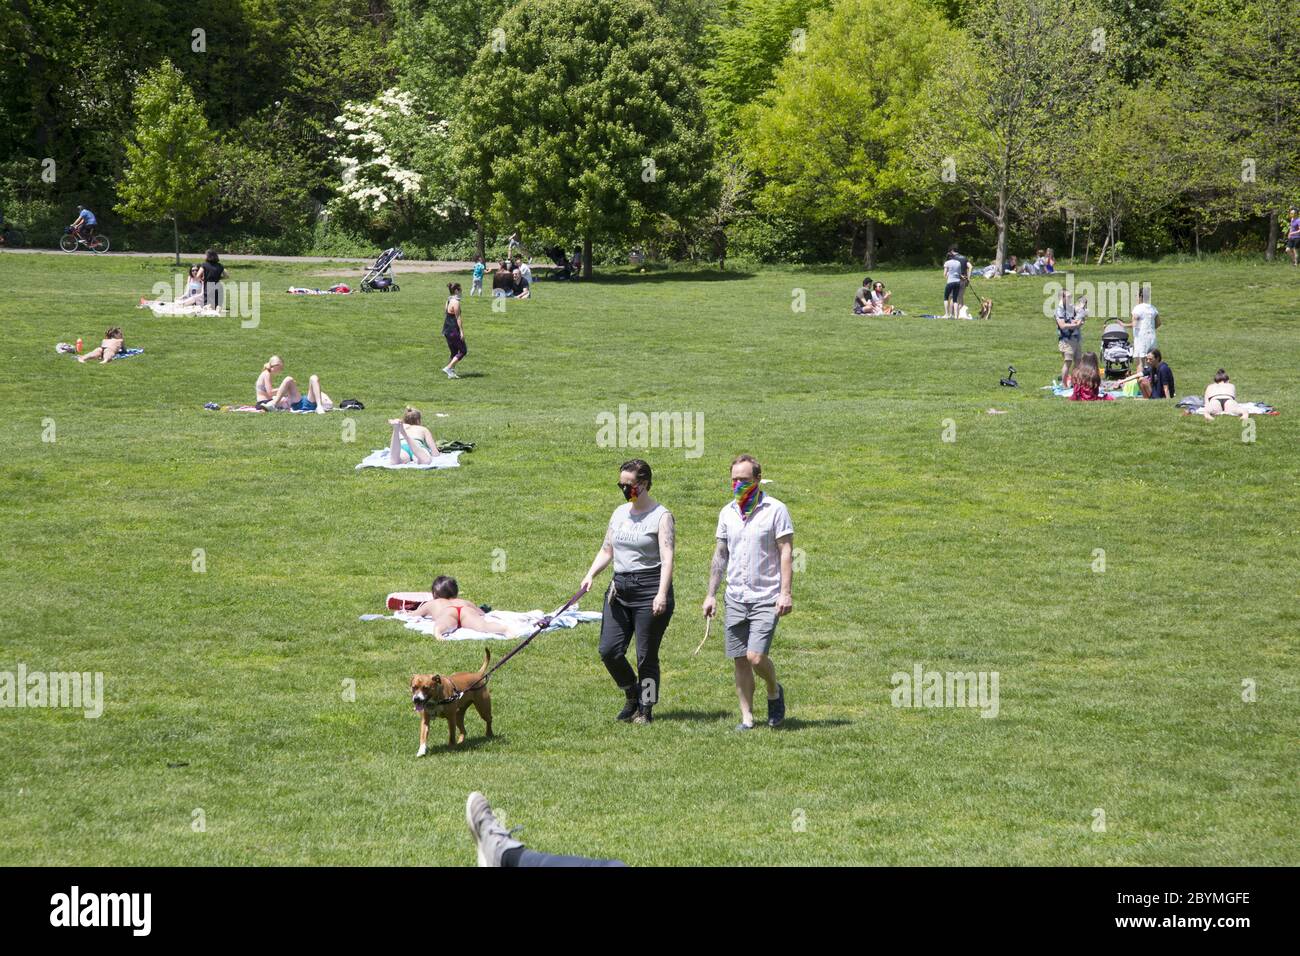 Die Menschen bekommen während der Coronavirus Covid-19 Pandemie etwas Sonne und Luft, während sie sich sozial distanzieren. Prospect Park, Brooklyn, New York. Stockfoto